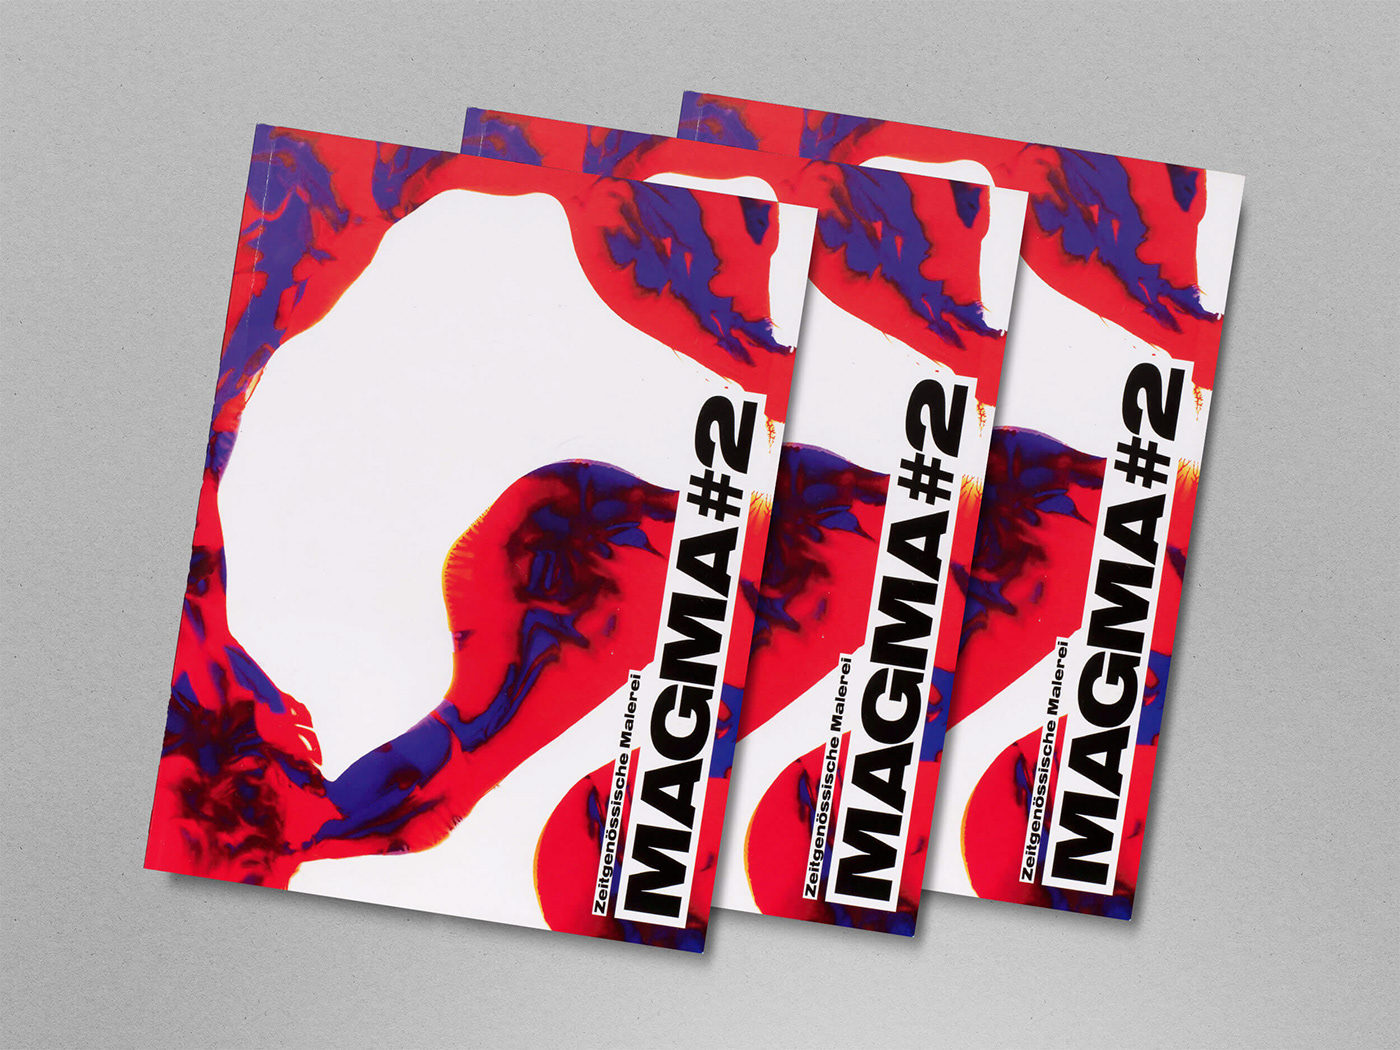 ausstellung book buchdesign editorialdesign katalog magma printdesign Triennale typo